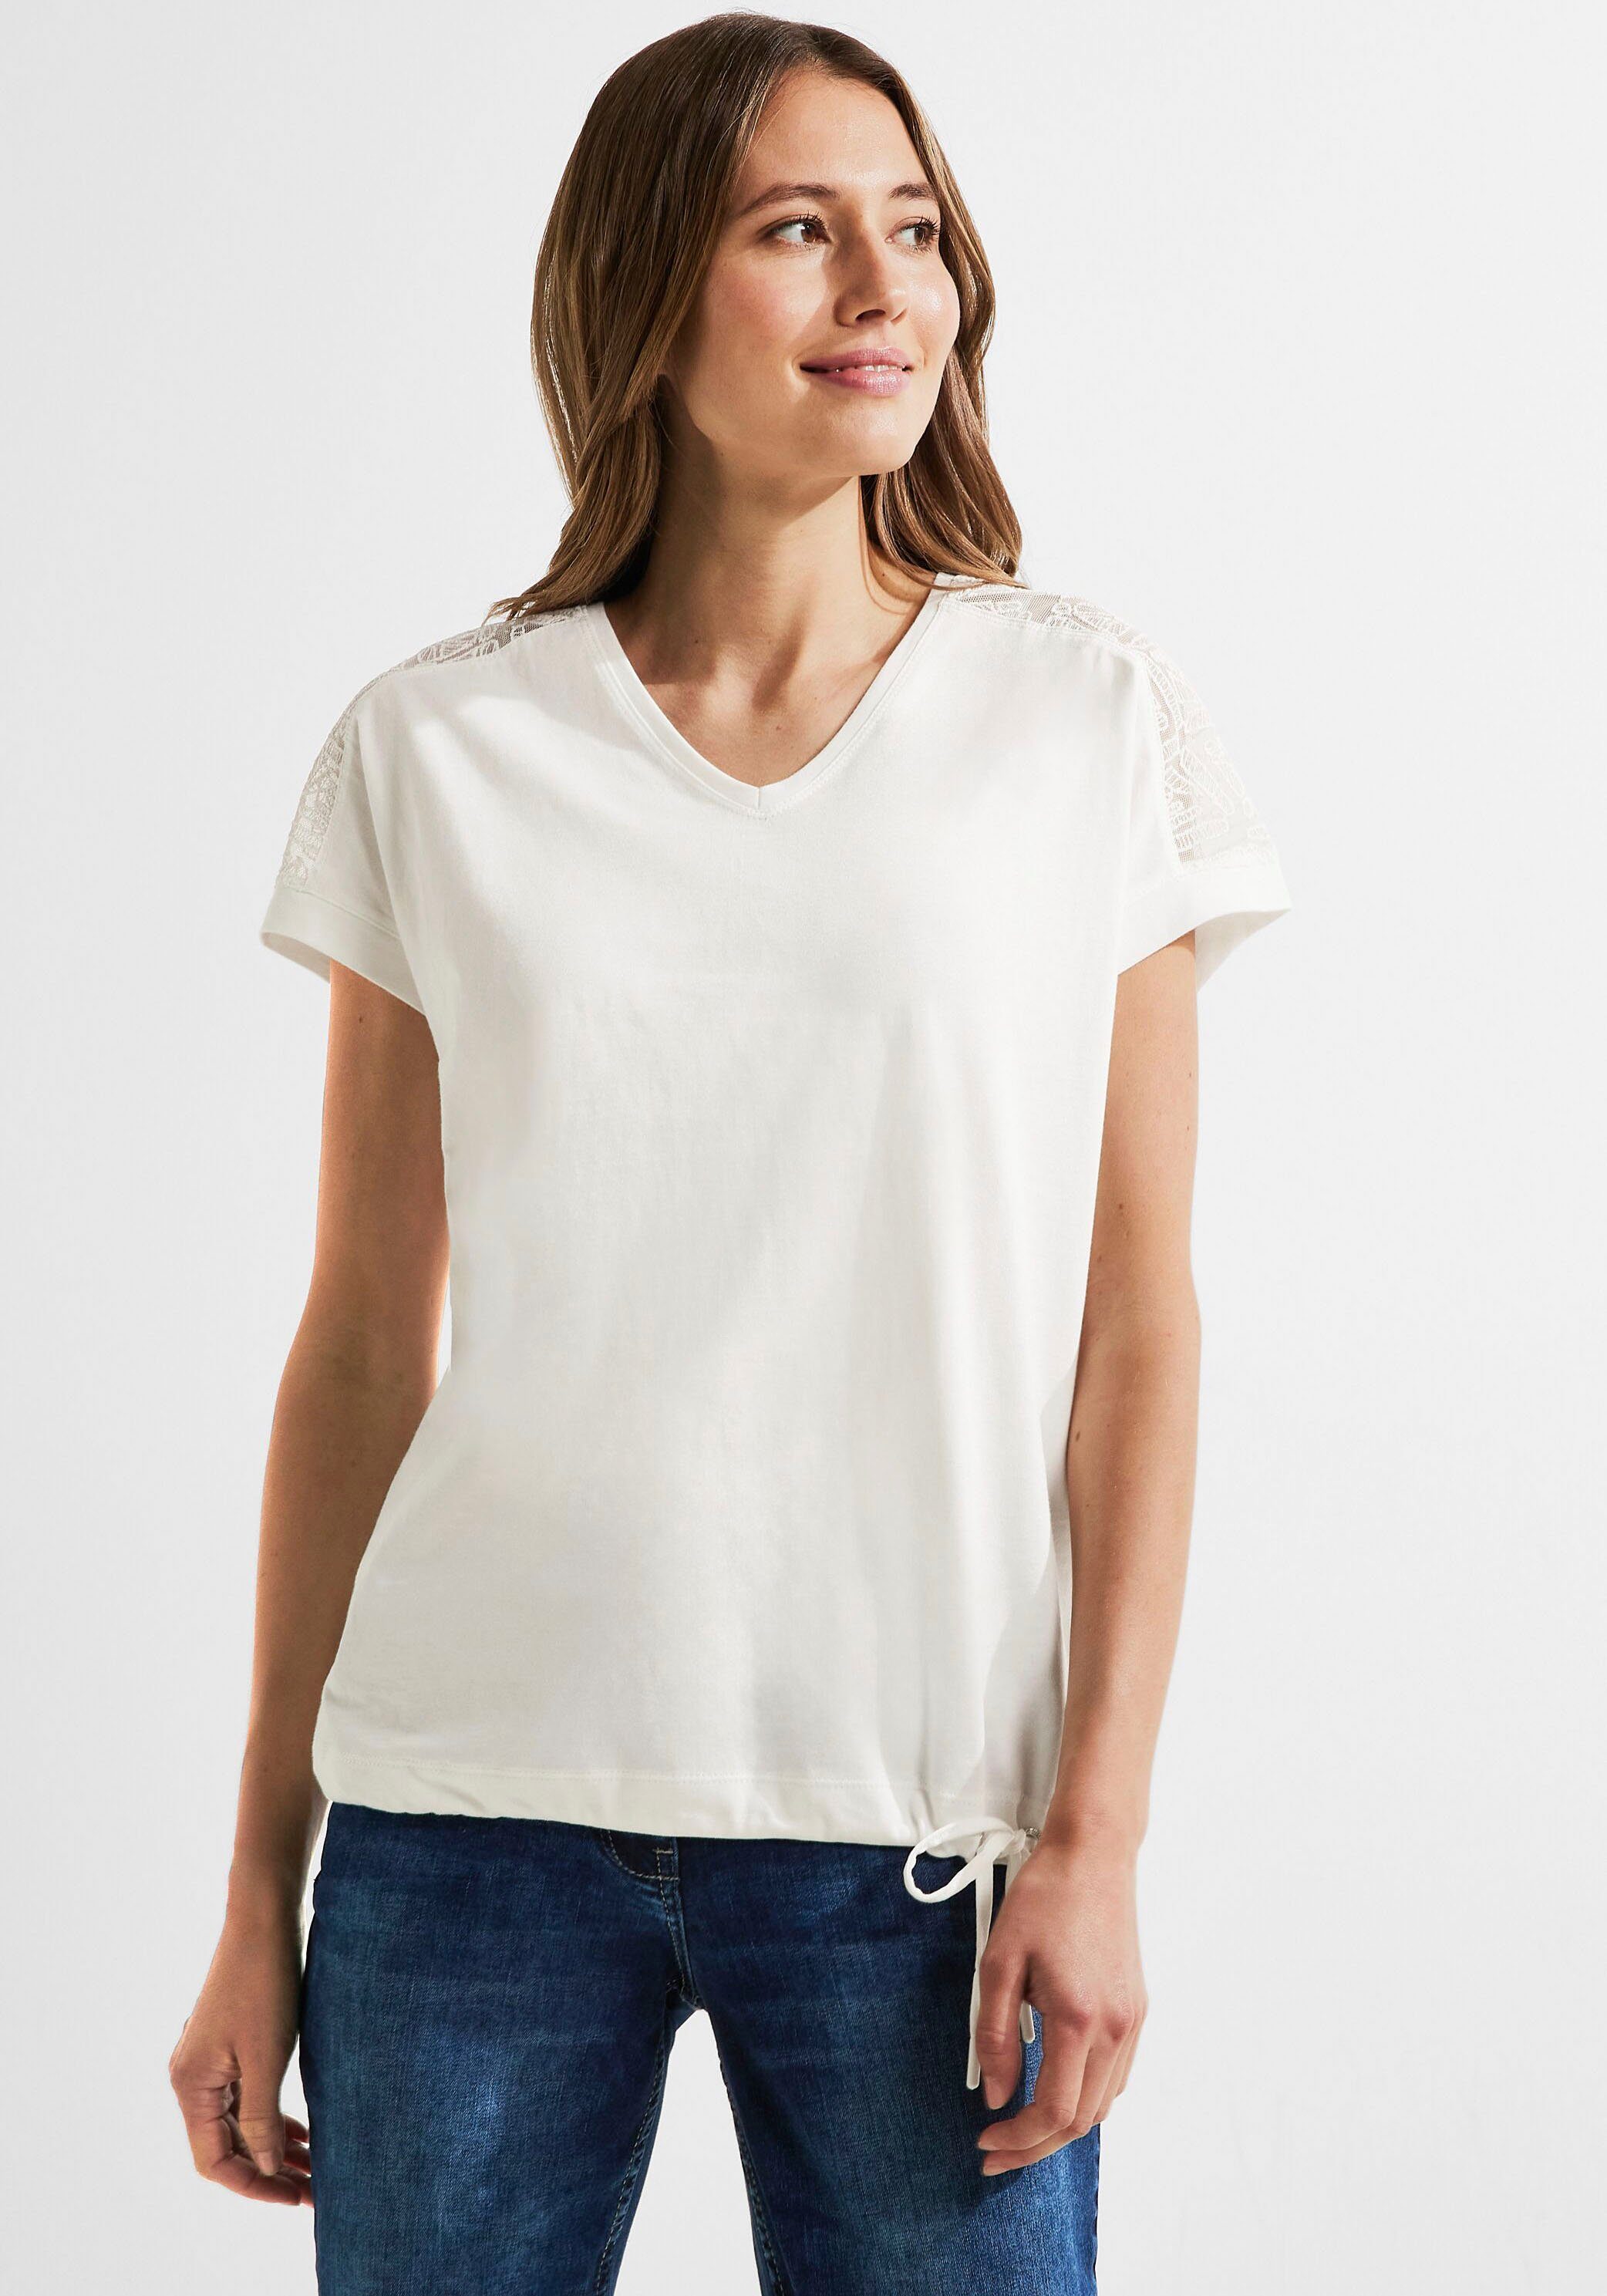 Cecil Damen T-Shirts online kaufen | OTTO